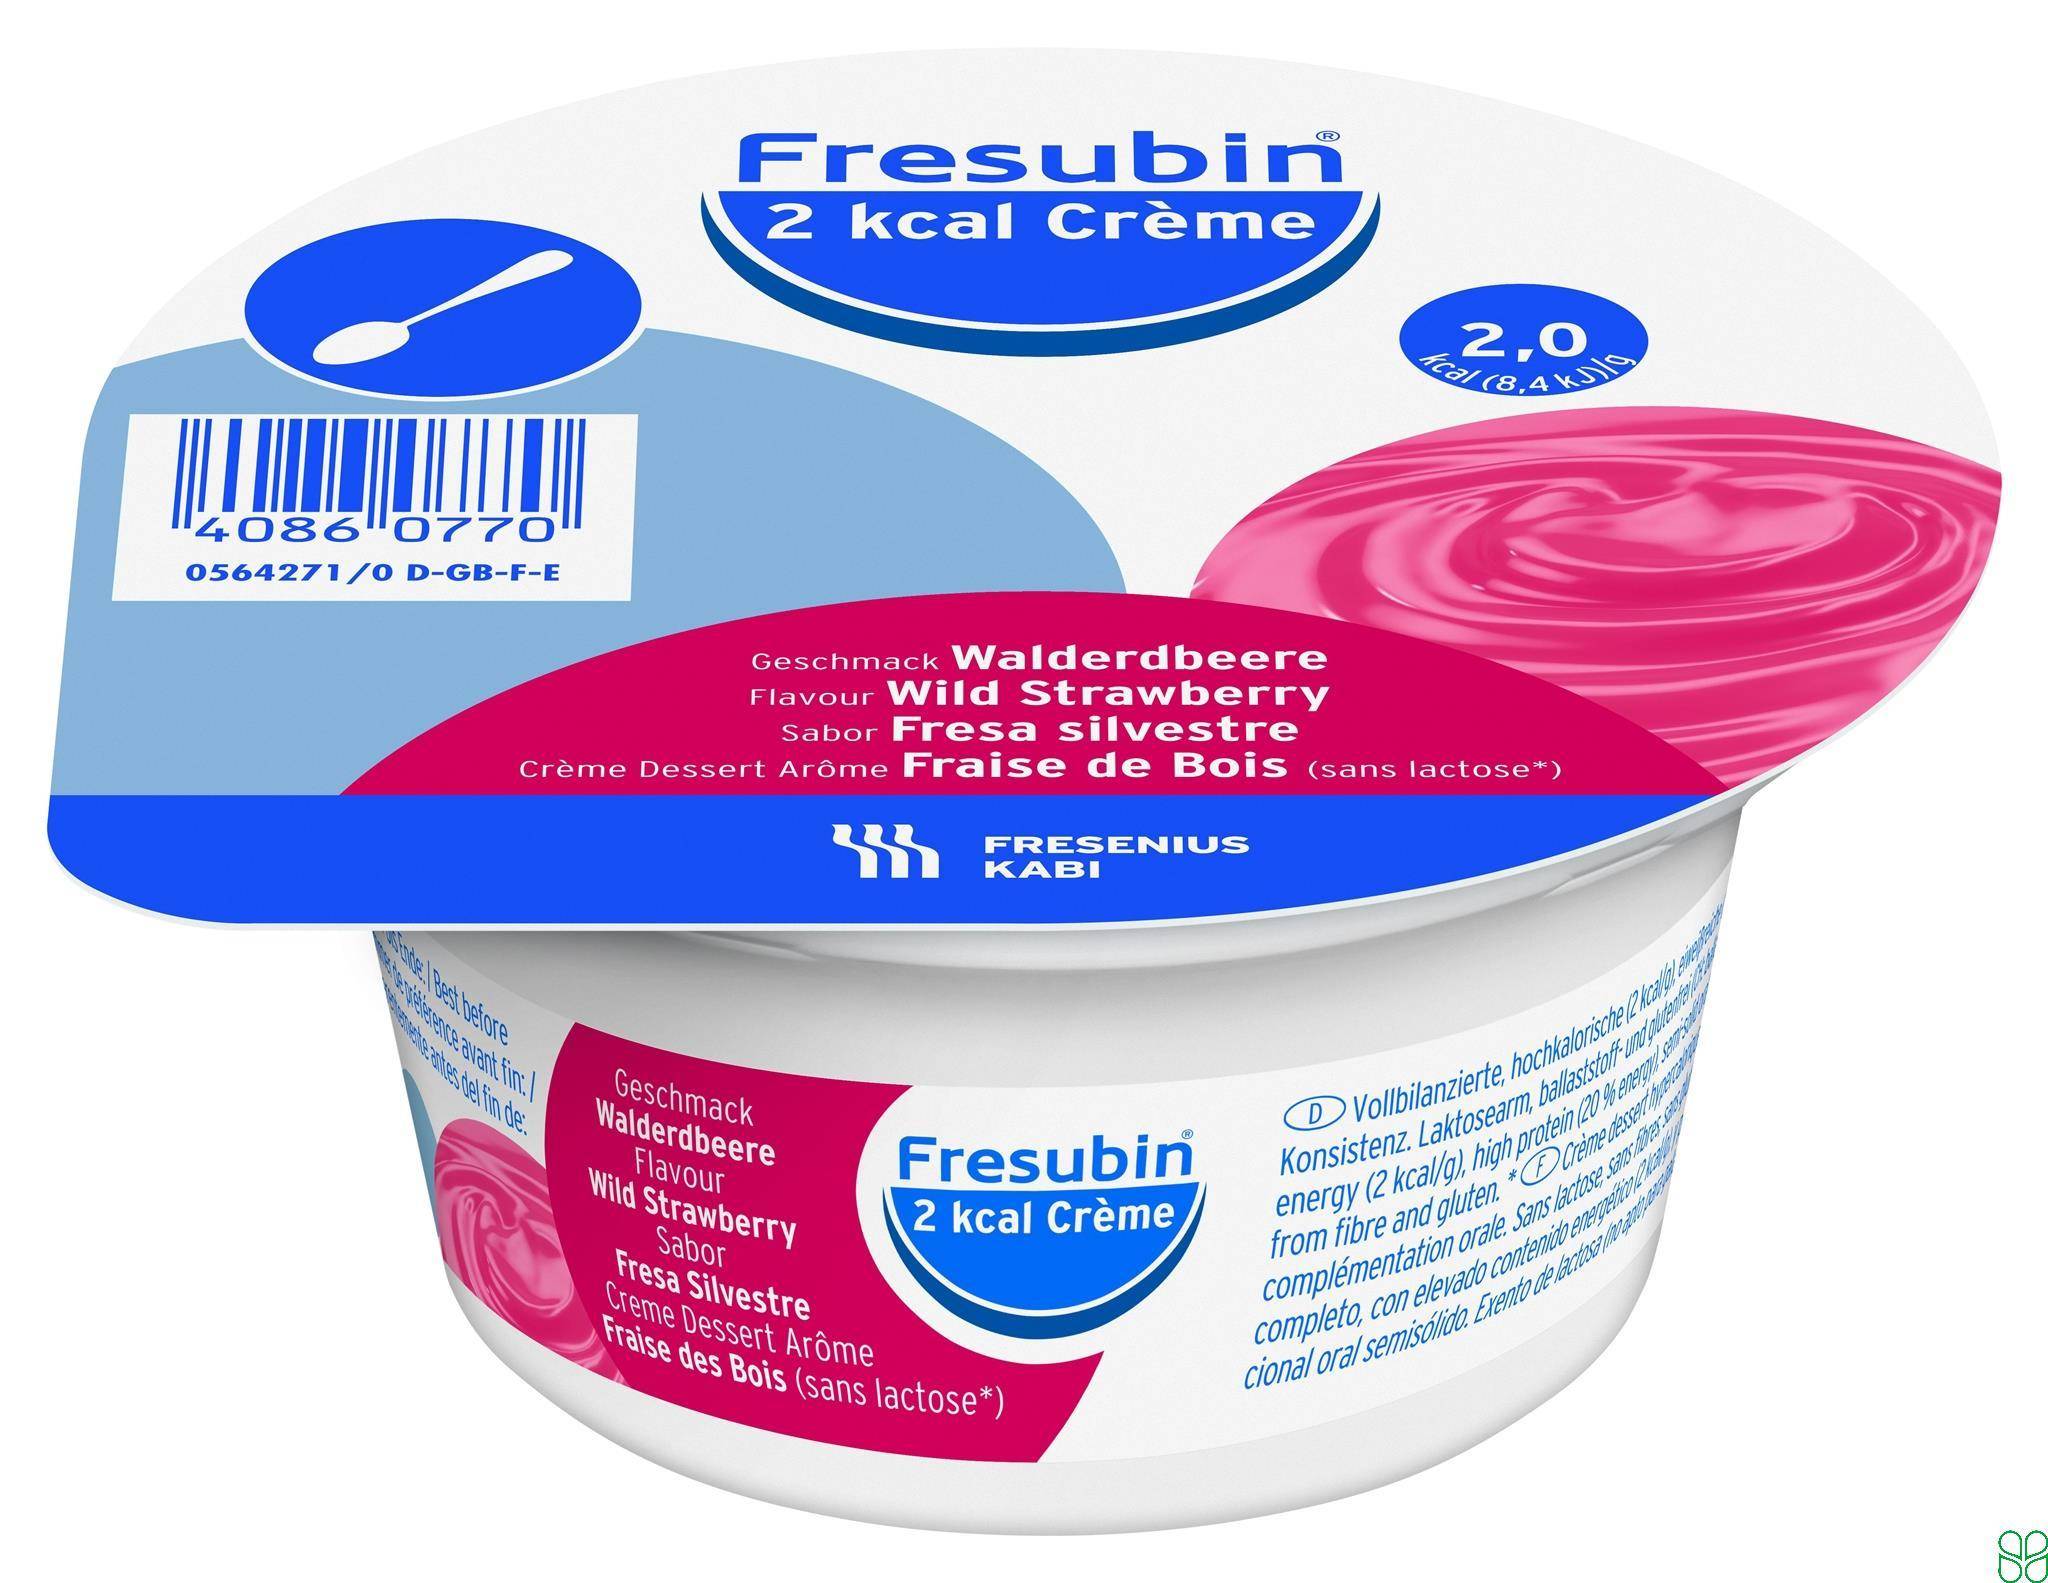 Fresubin 2 Kcal Creme Dieetvoeding BosAardbei 4x 125g